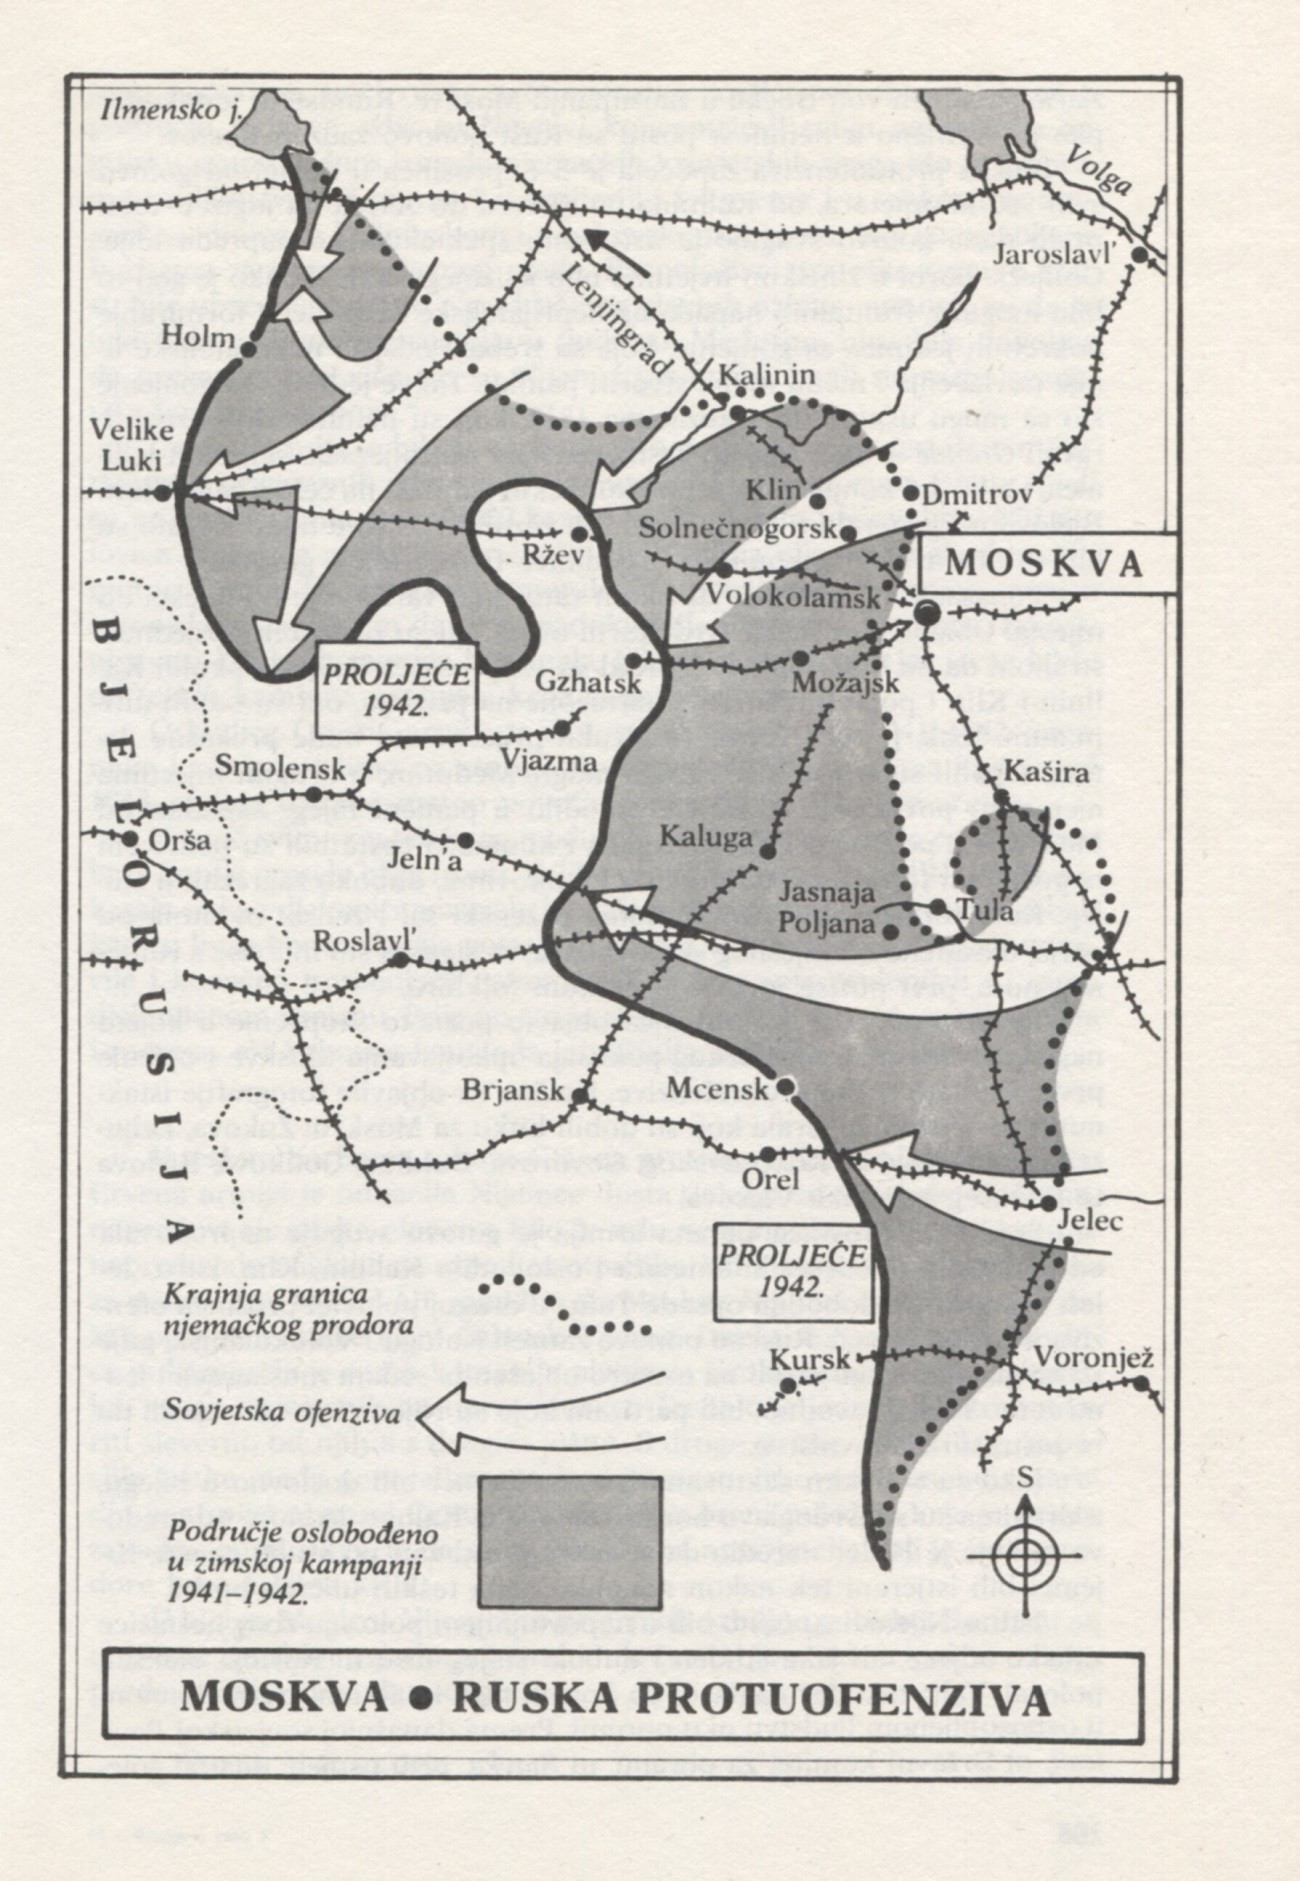 Sovjetska kontraofenziva 1941.

